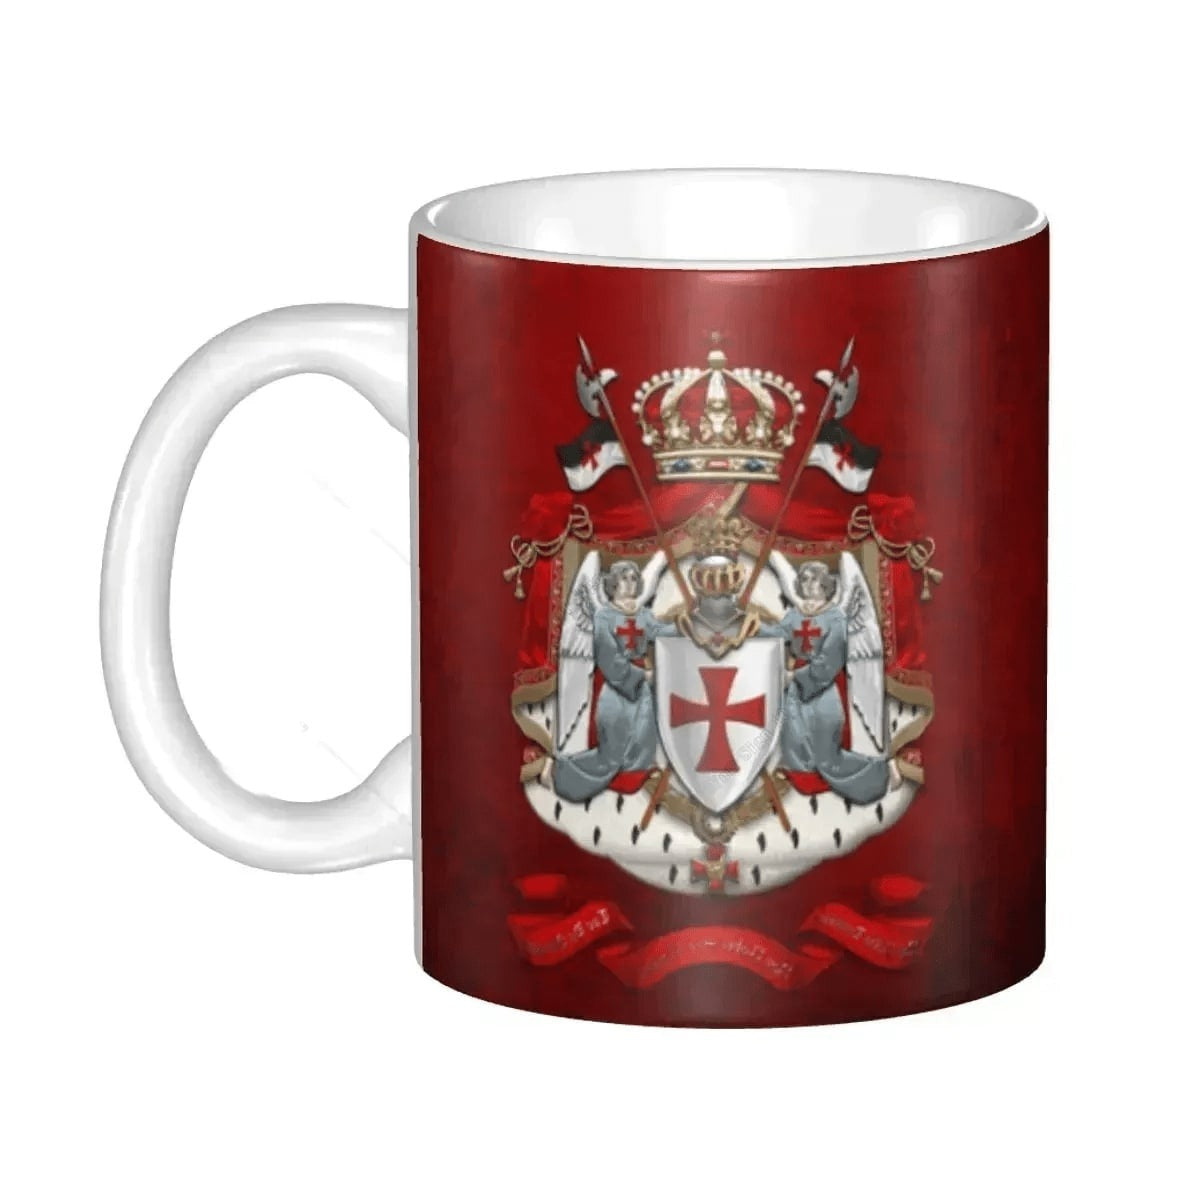 Knights Templar Commandery Mug - Porcelain Red Shield Cross - Bricks Masons